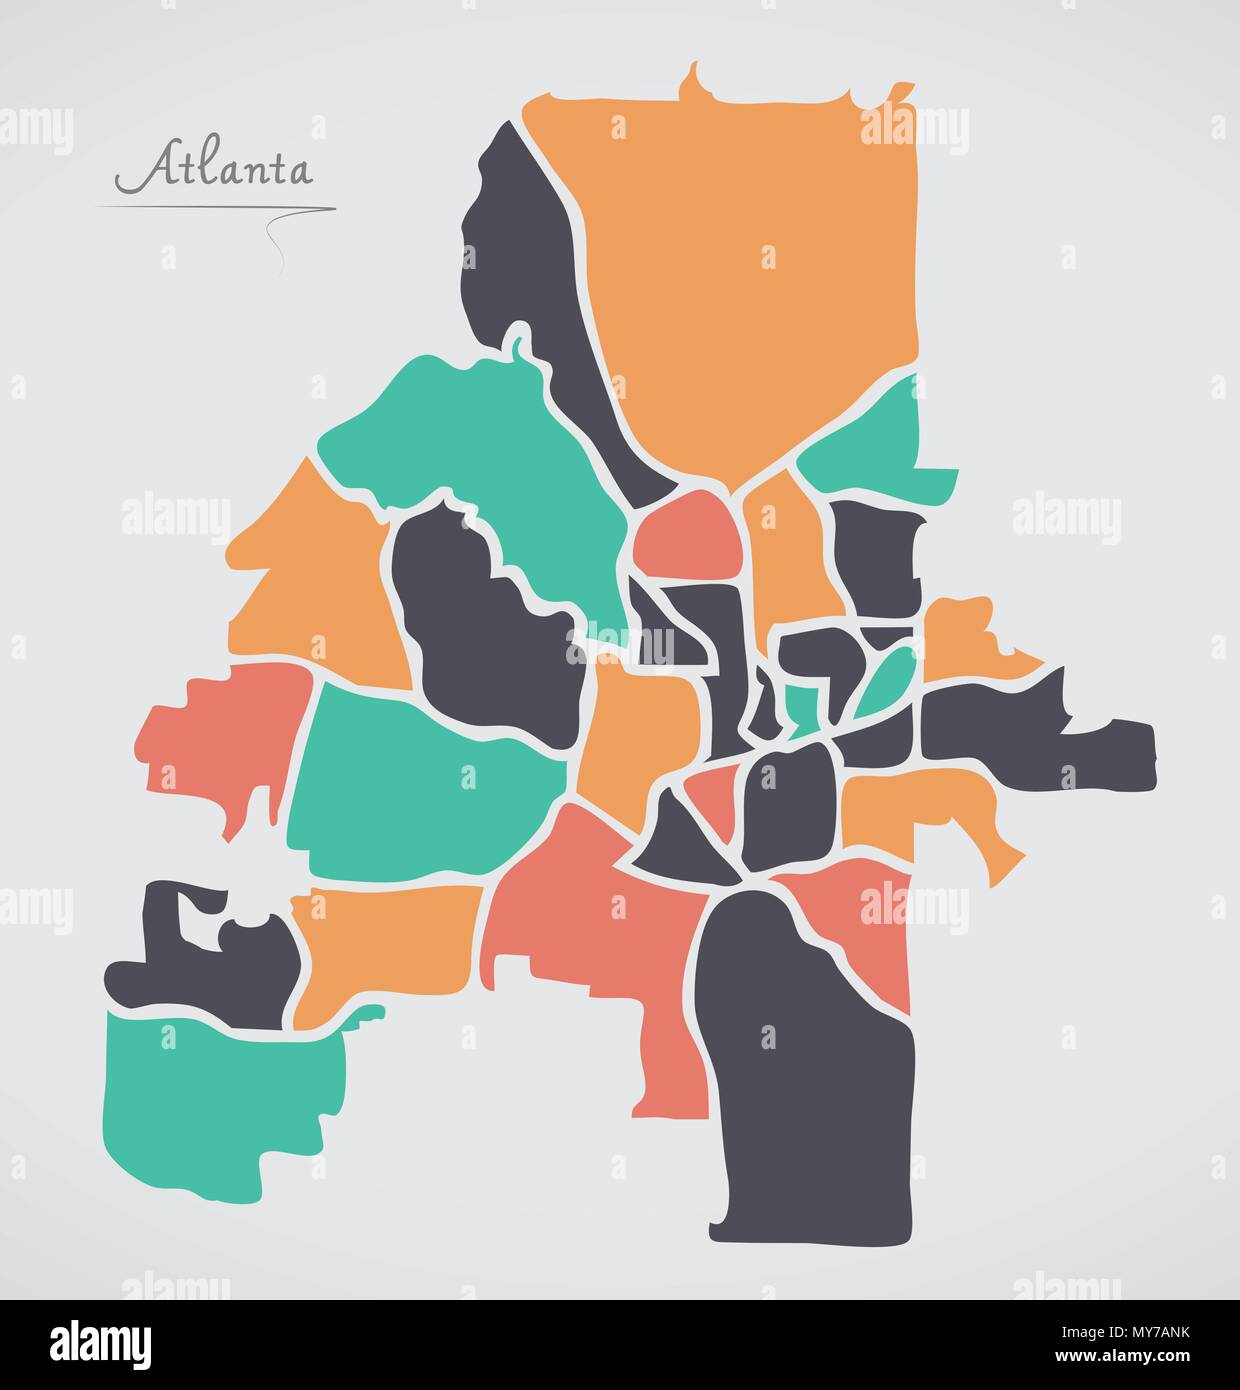 Atlanta Georgia Karte mit Nachbarschaften und moderne runde Formen Stock Vektor